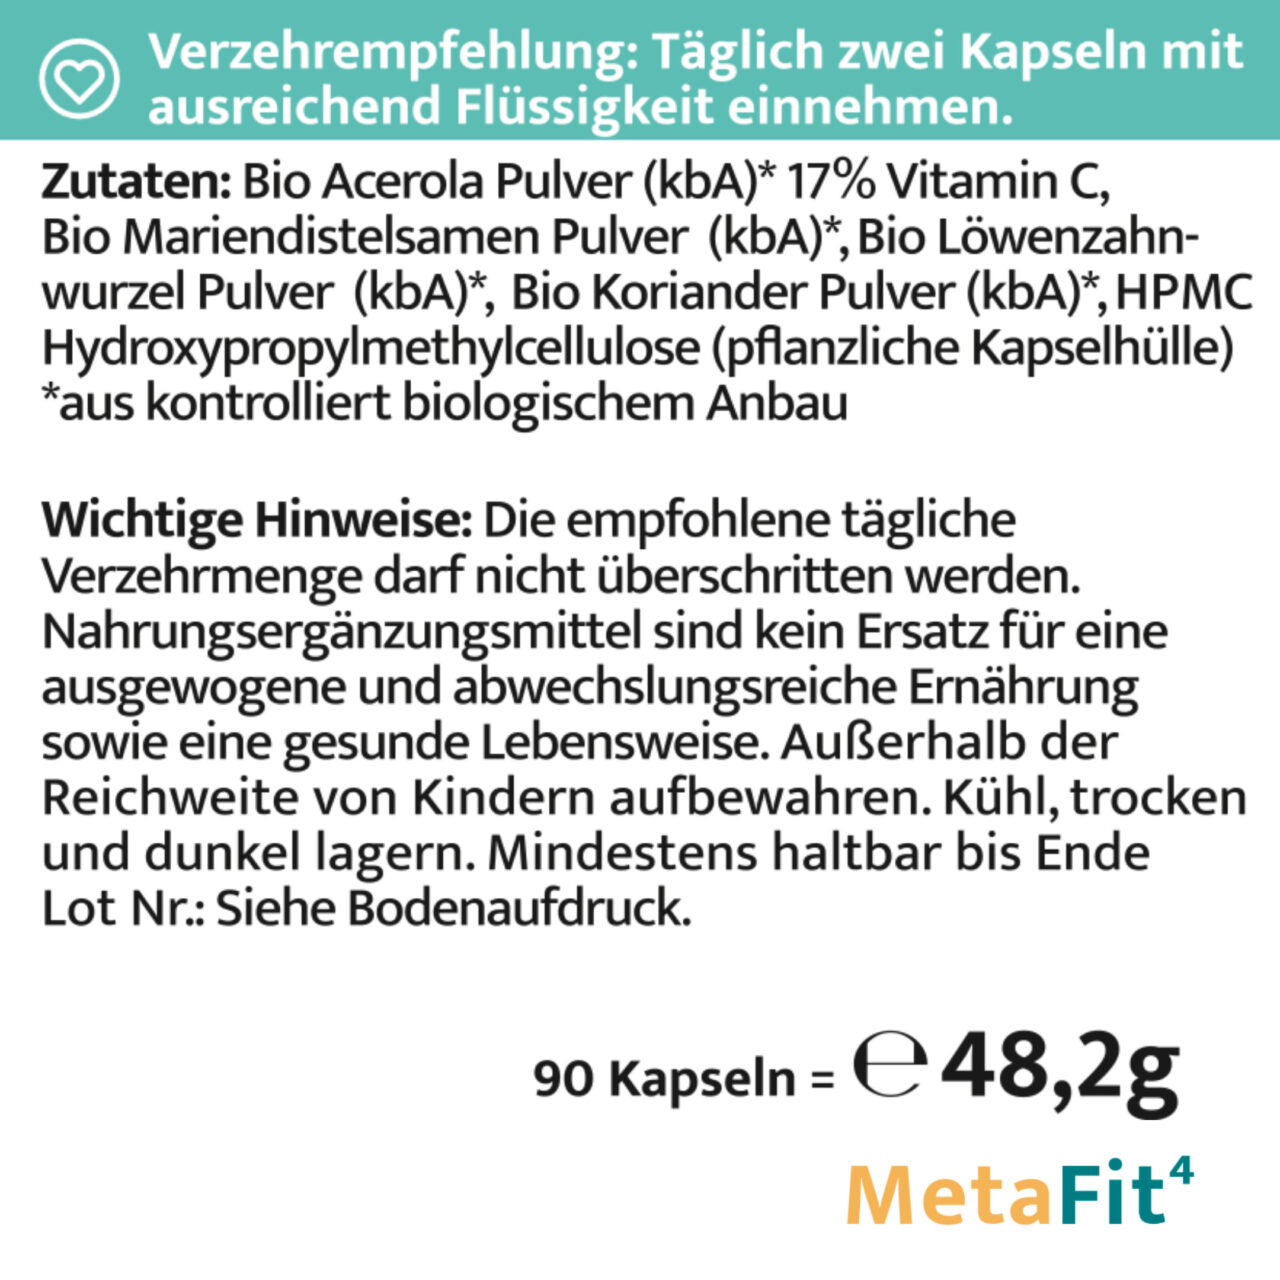 HistaFit MetaFit4 Zutaten